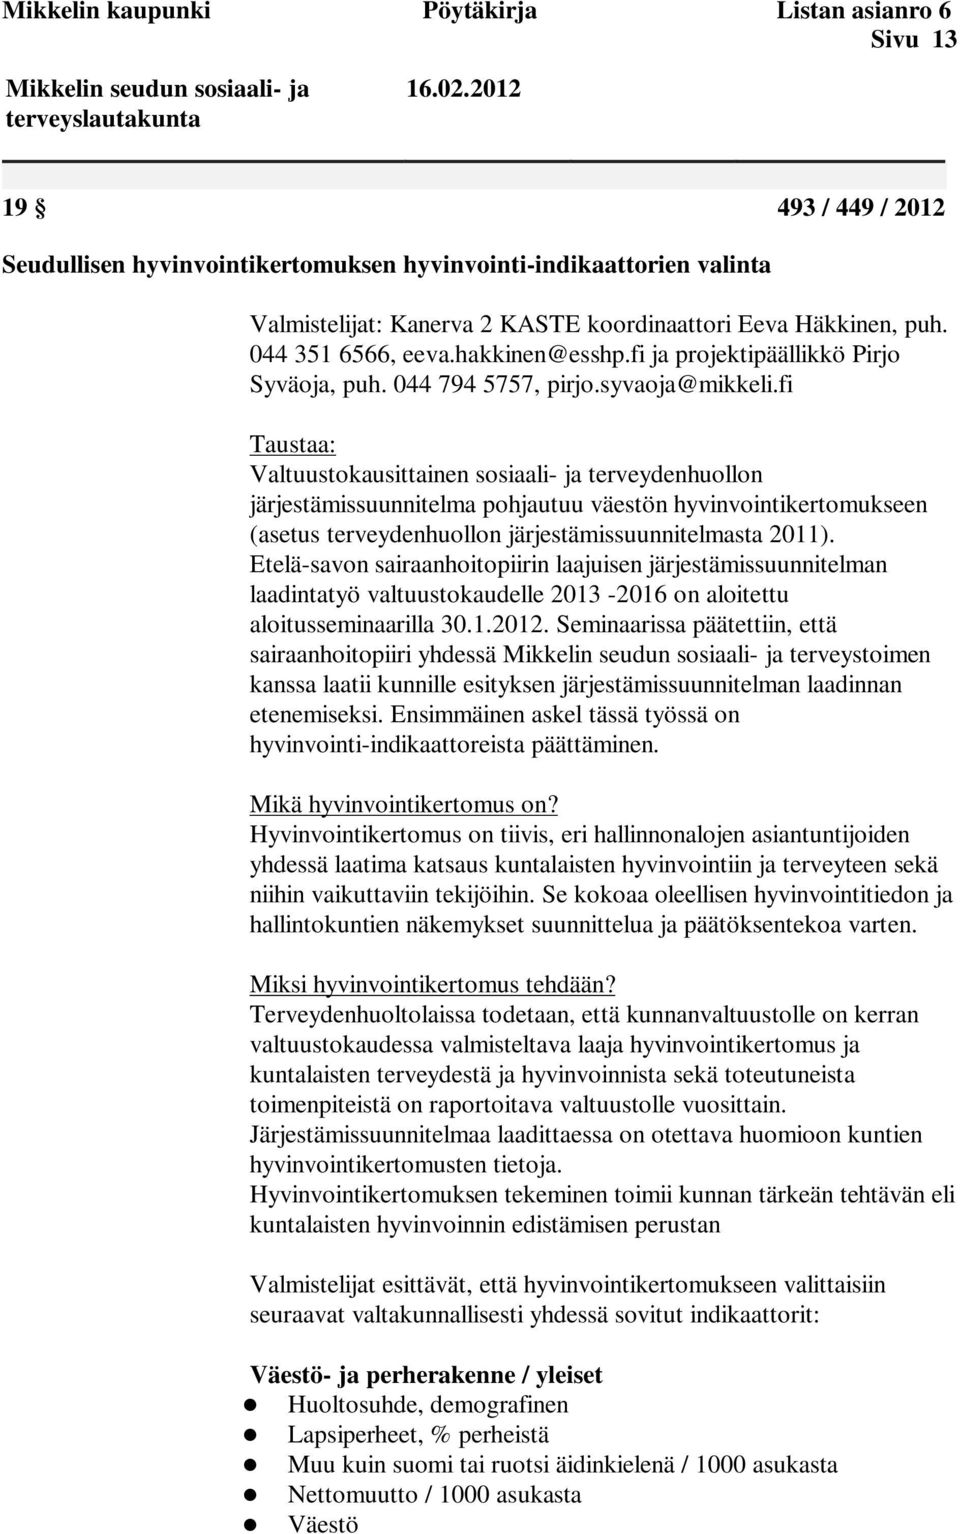 fi Taustaa: Valtuustokausittainen sosiaali- ja terveydenhuollon järjestämissuunnitelma pohjautuu väestön hyvinvointikertomukseen (asetus terveydenhuollon järjestämissuunnitelmasta 2011).